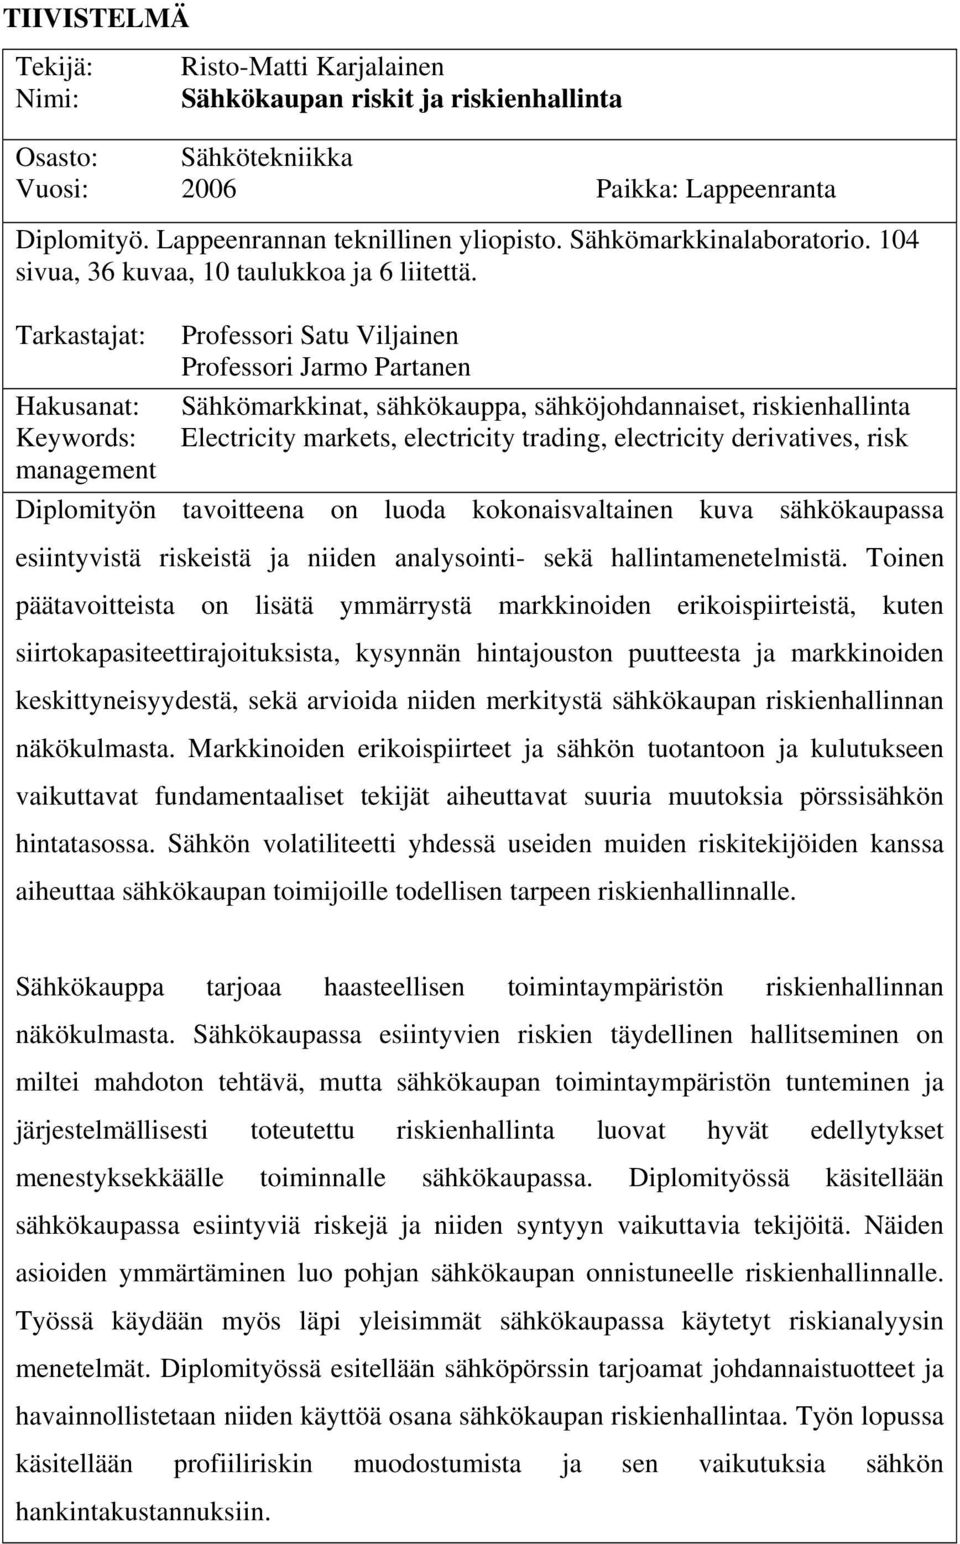 Tarkastajat: Hakusanat: Keywords: management Professori Satu Viljainen Professori Jarmo Partanen Sähkömarkkinat, sähkökauppa, sähköjohdannaiset, riskienhallinta Electricity markets, electricity